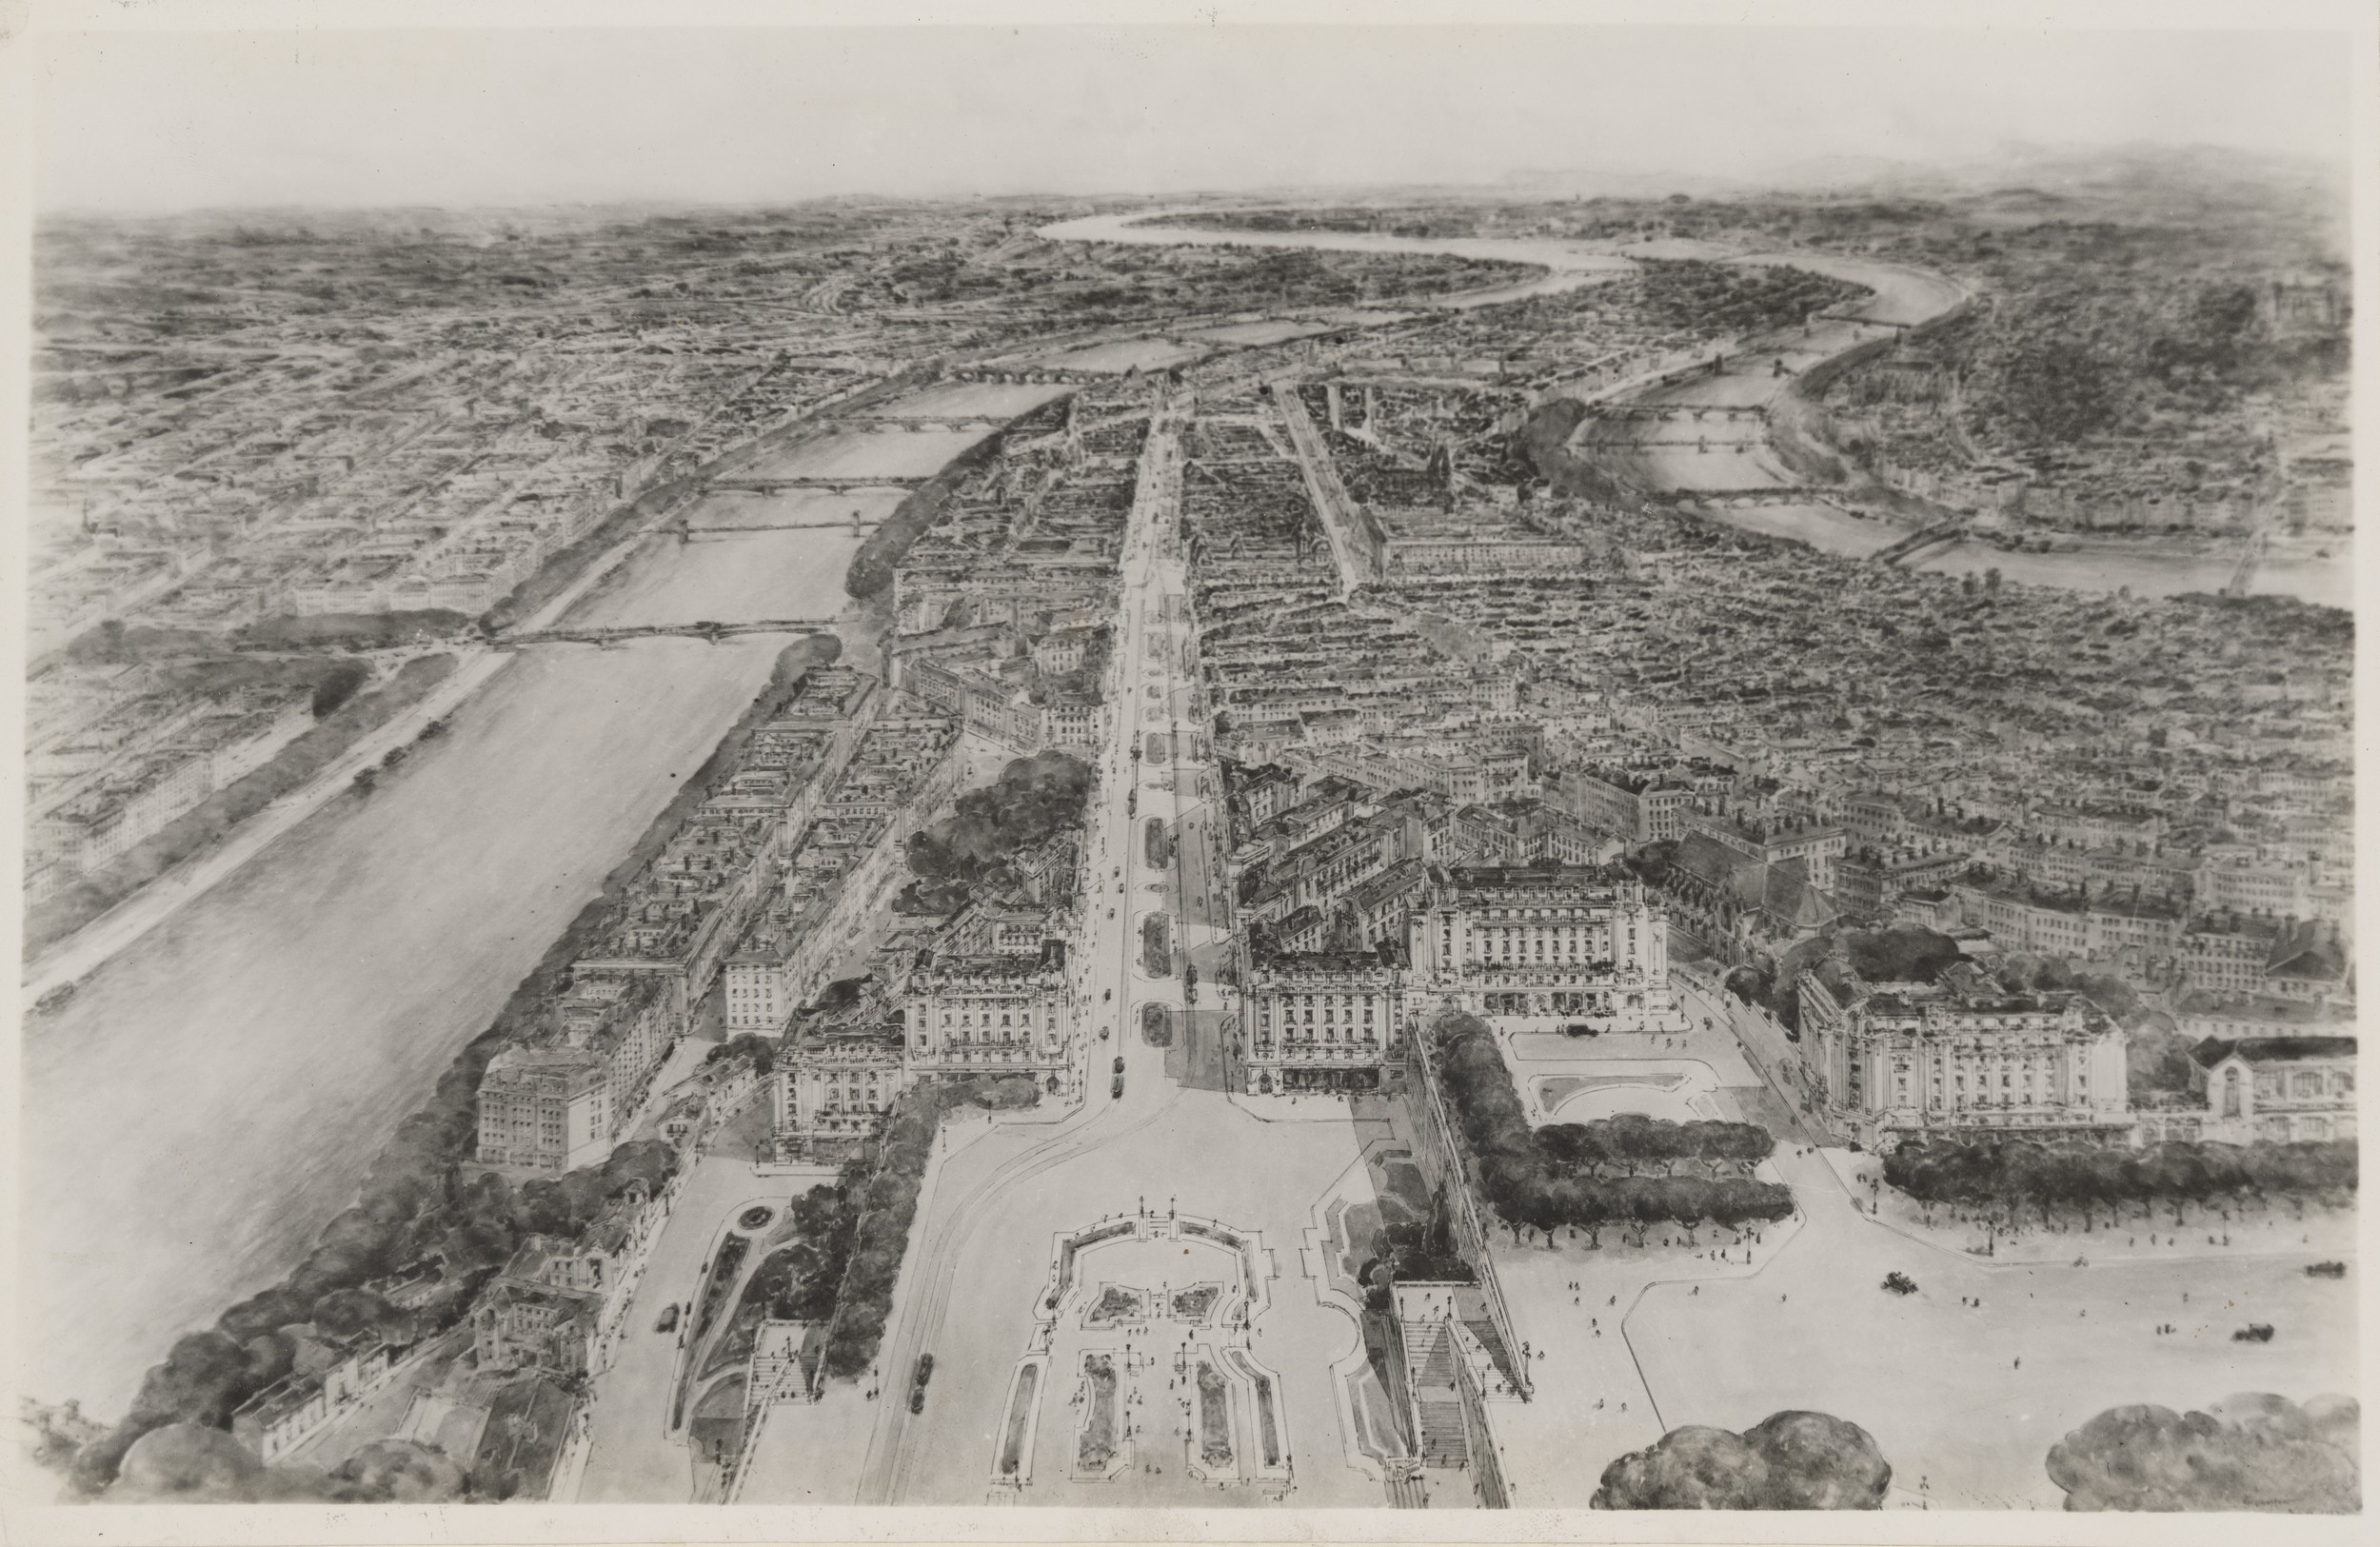 Ville de Lyon, projet d'aménagement d'embellissement et d'extension : prolongement de la rue de la République (1935, cote : 3SAT/3, rapport p. 60)